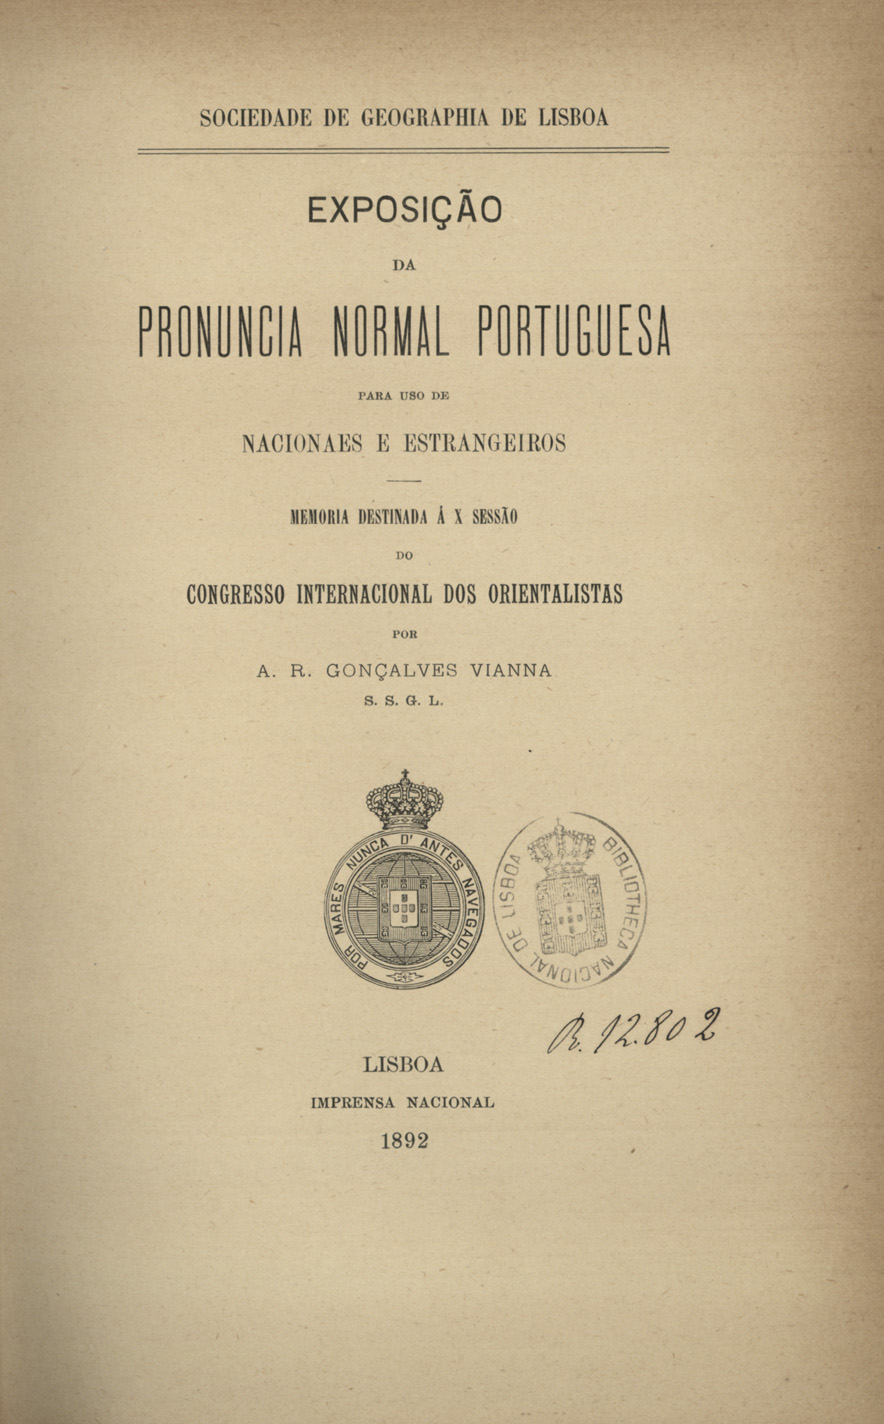 Cover of Exposição da pronuncia normal portuguesa para uso de nacionais e estrangeiros / A. R. F. Gonçalves Vianna. - Lisboa : Impr. Nacional, 1892. - 101 p. ; 24 cm